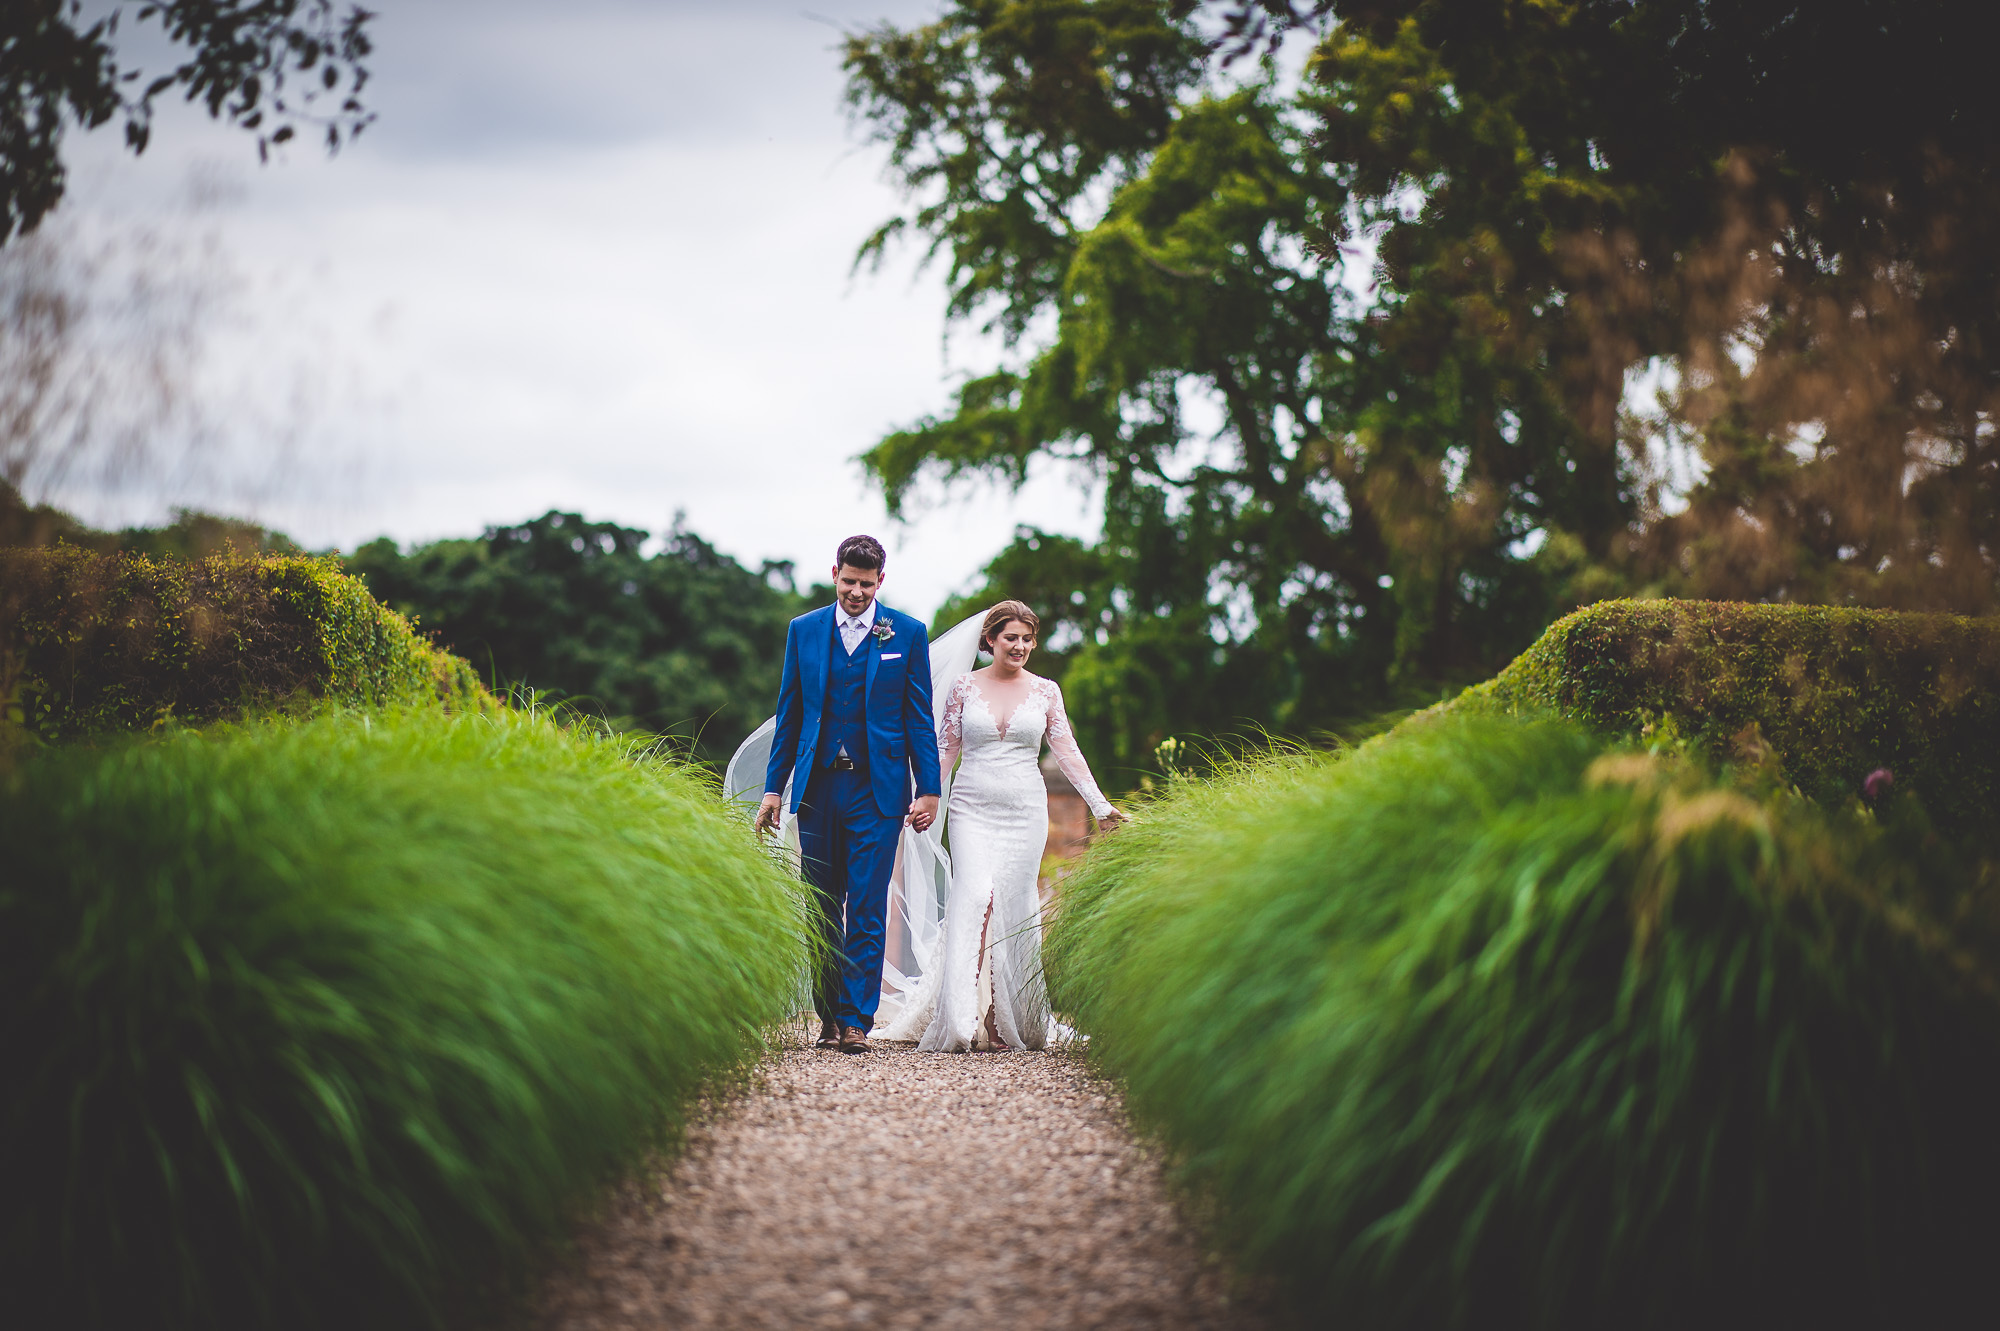 A wedding photographer captures a couple's memorable walk through tall grass at their wedding.